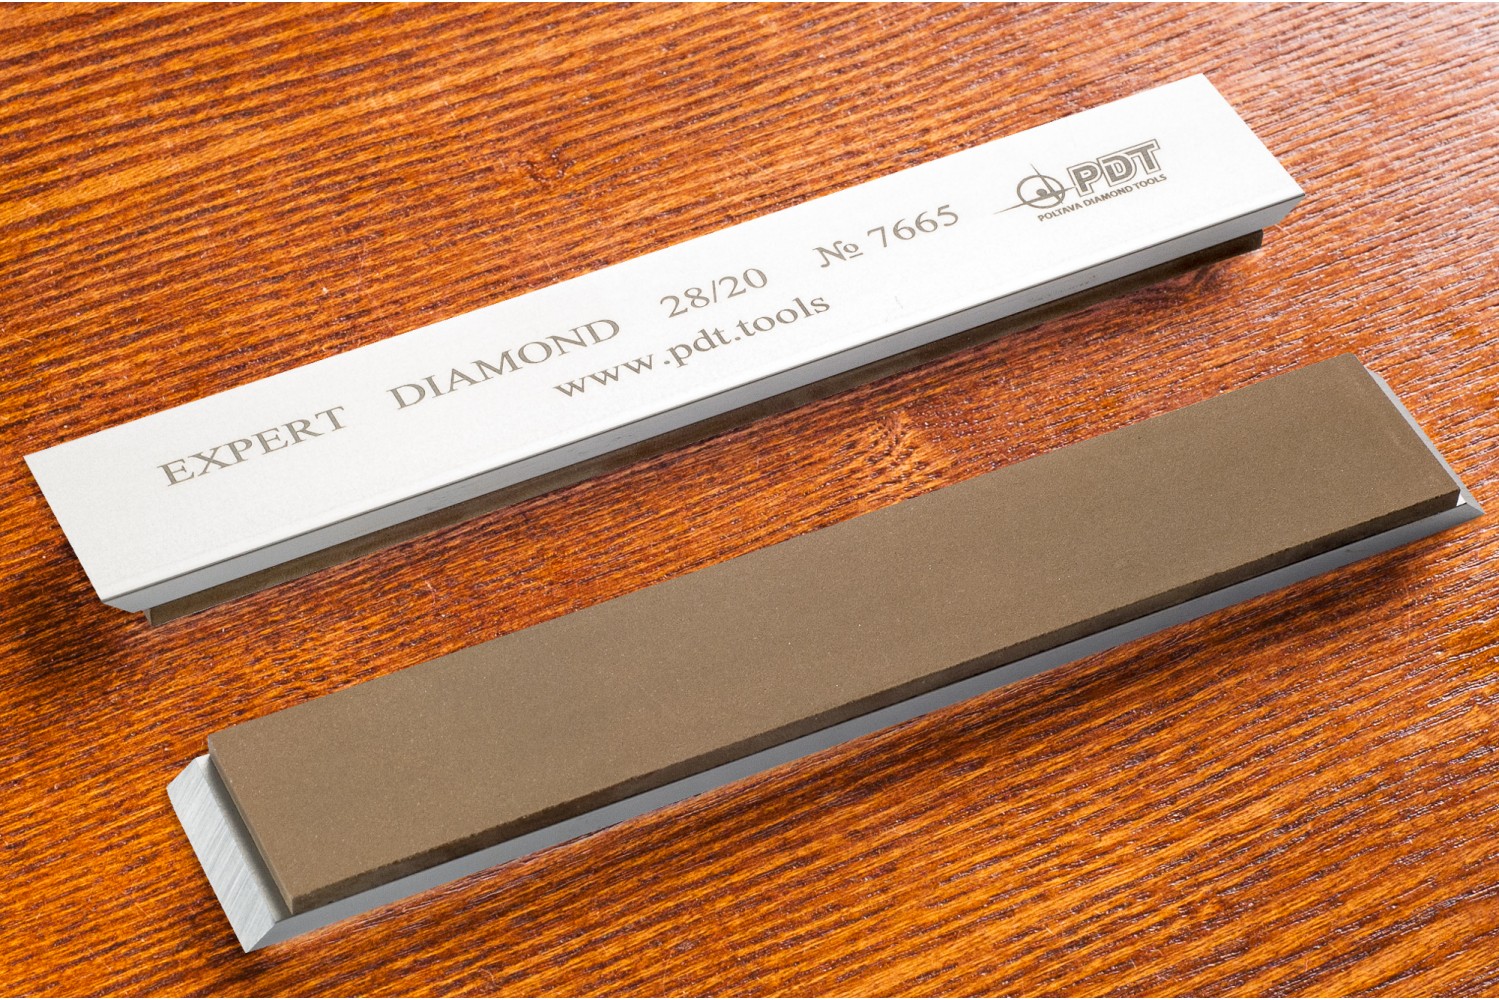 Алмазный брусок для заточки PDT EXPERT 150-25-3мм 28/20 мкм на алюминиевом бланке бруски для заточки удачная покупка